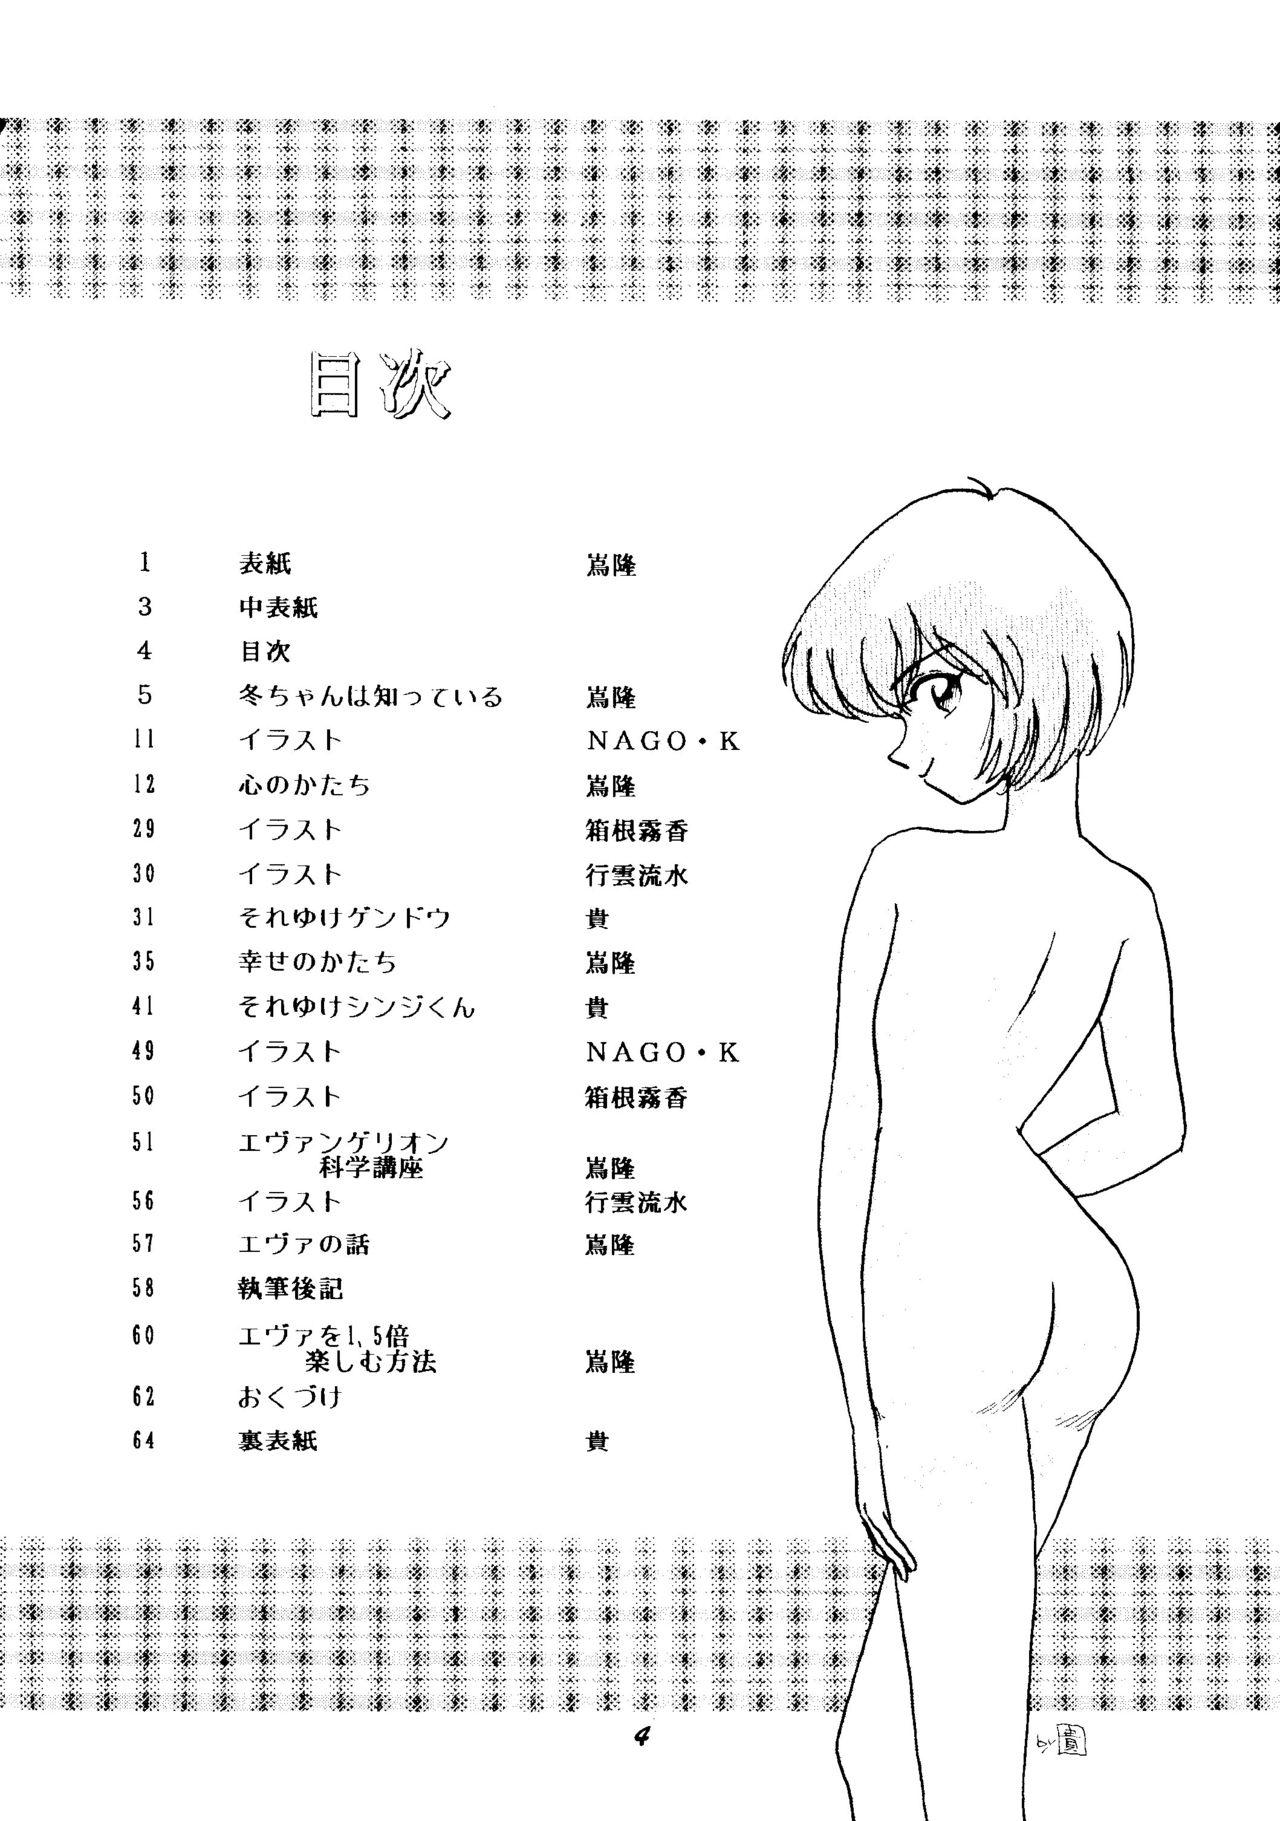 Pegging (C50) [Studio Boxer (Shima Takashi, Taka) HoHeTo 13 (Neon Genesis Evangelion) - Neon genesis evangelion Voyeursex - Page 3